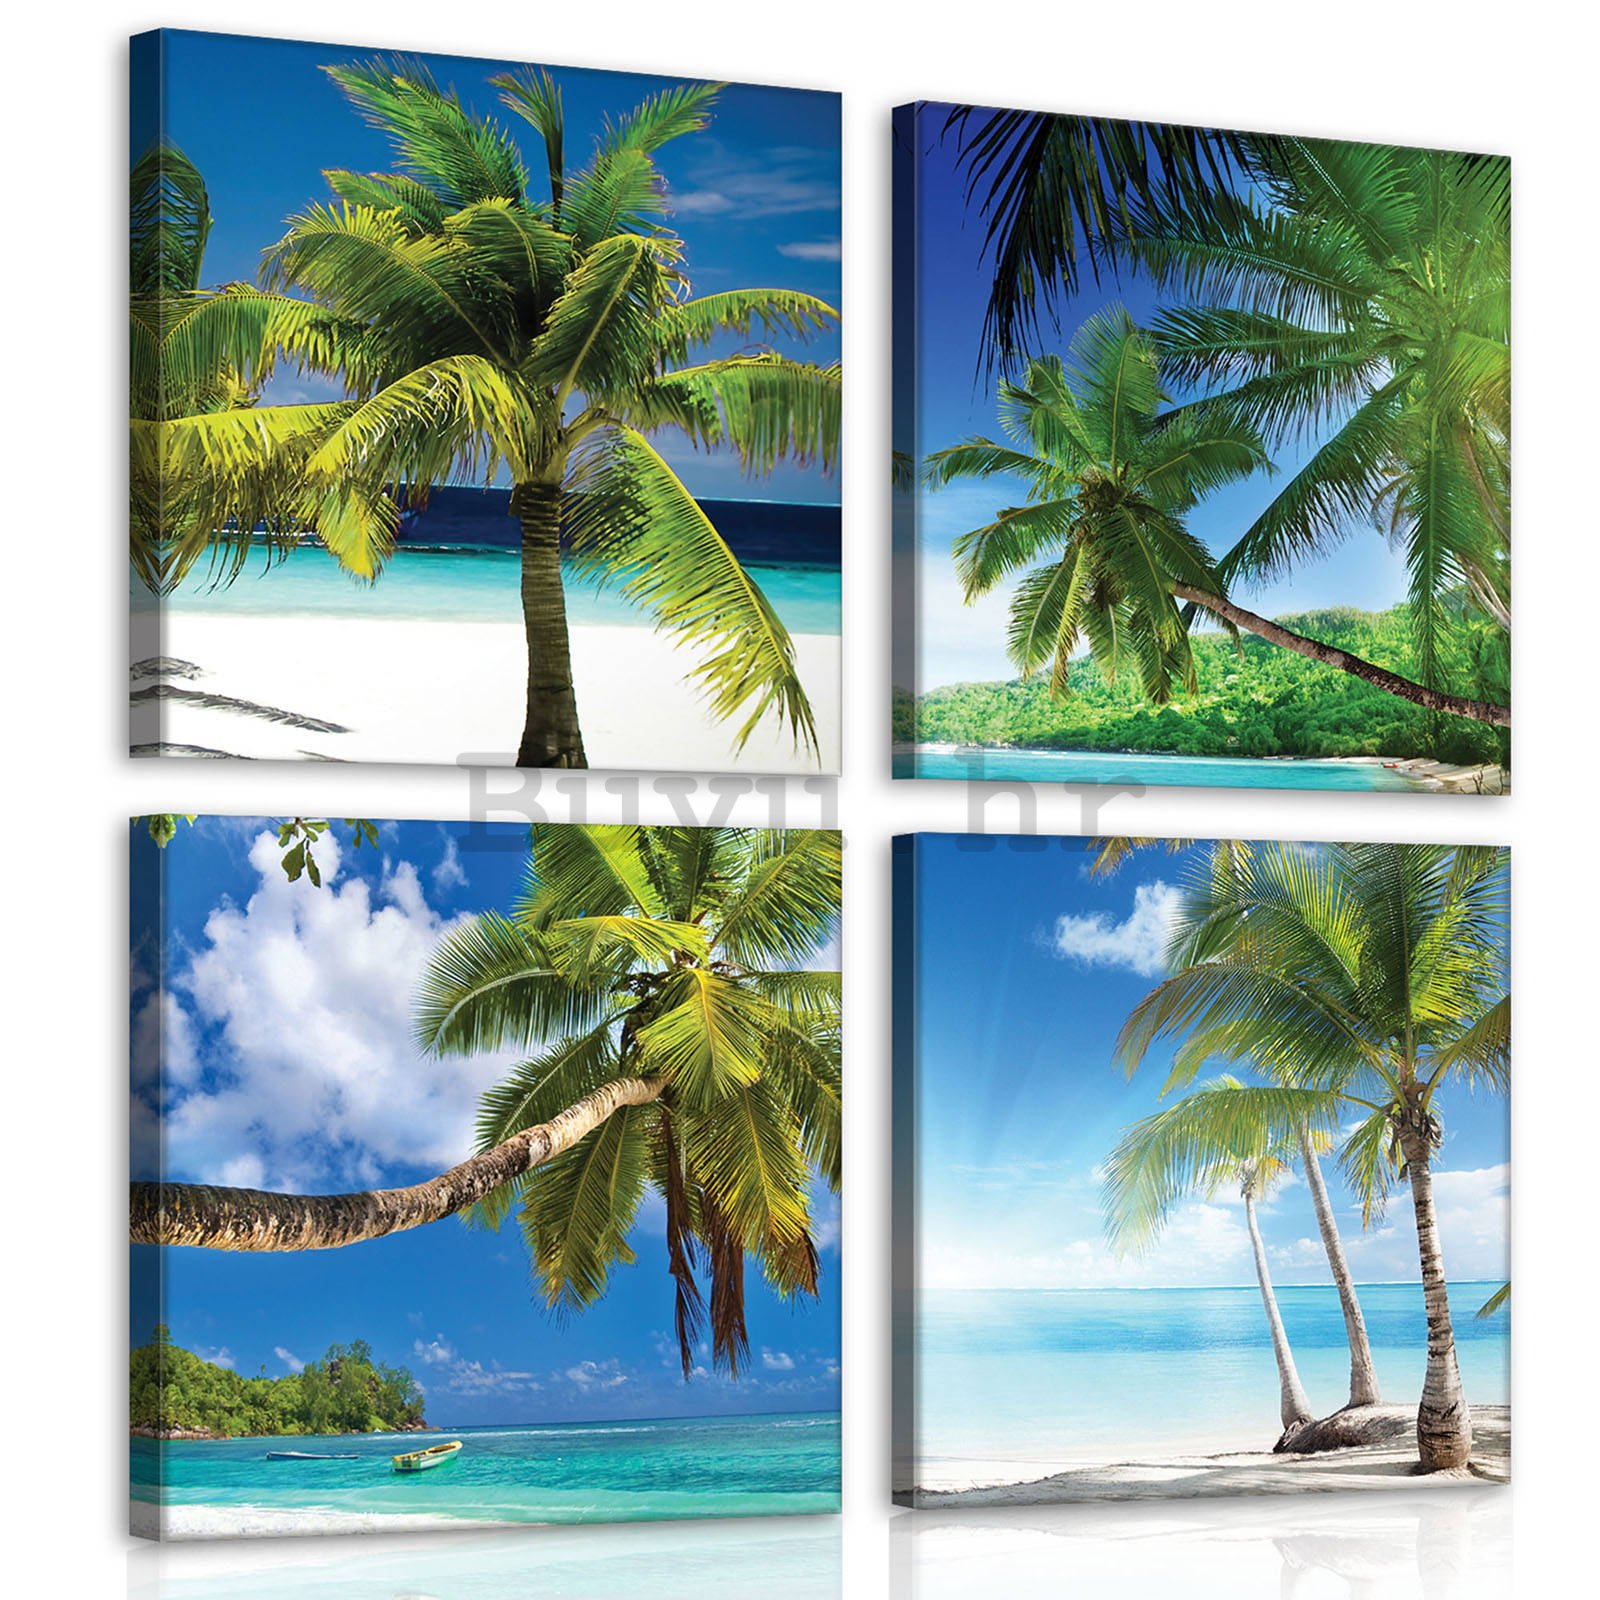 Slika na platnu: Palmy na pláži - set 4kom 25x25cm